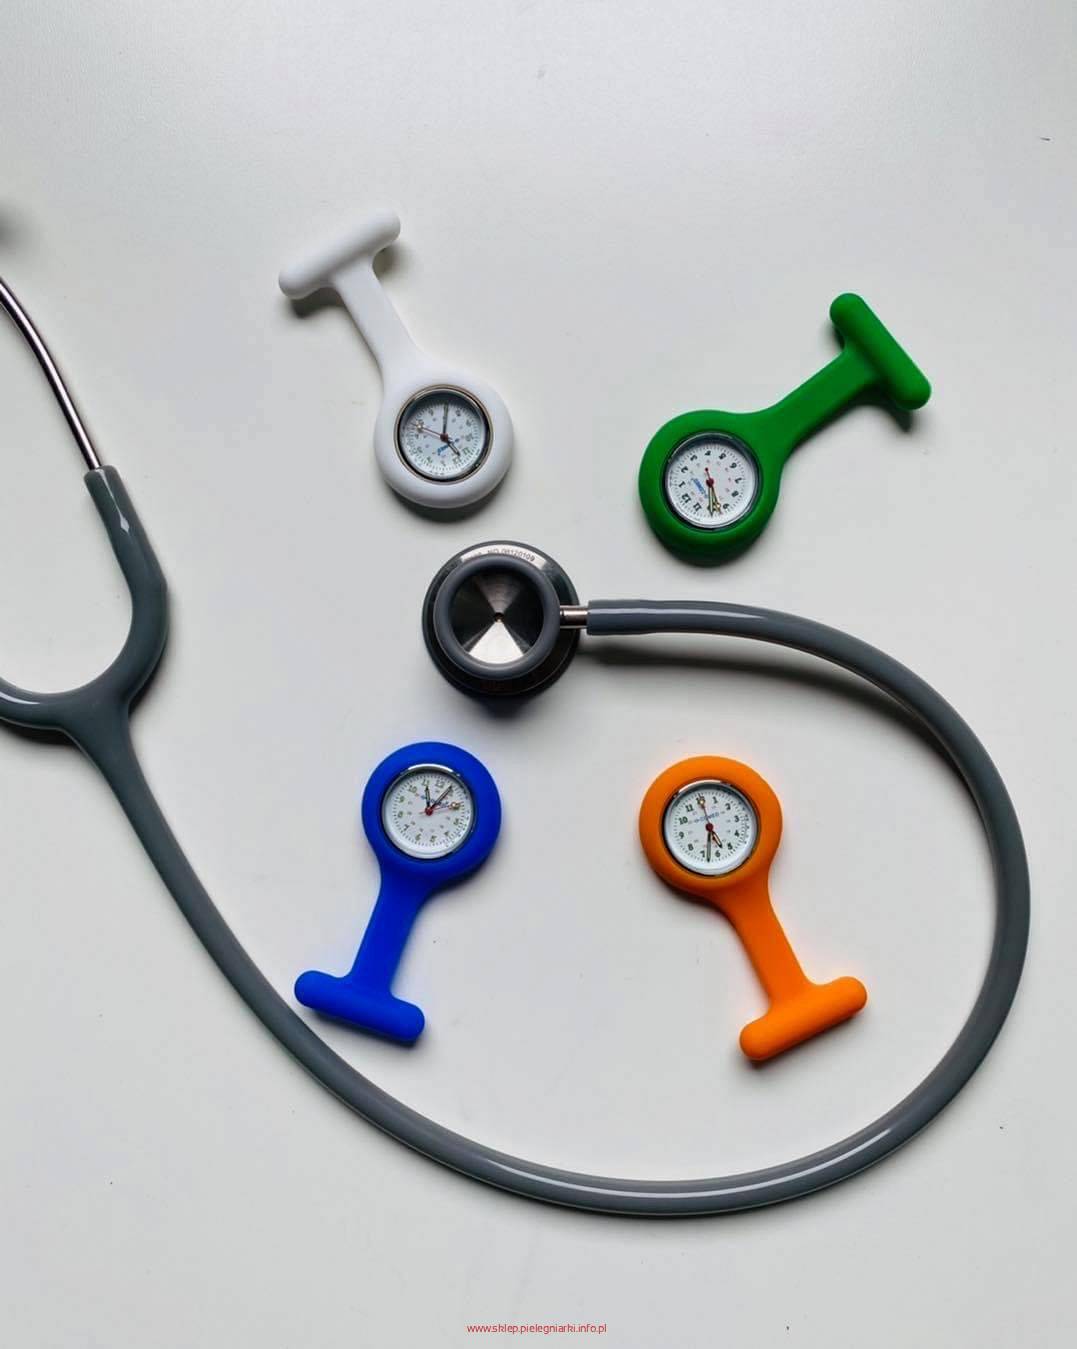 Zegarek medyczny dla pielęgniarki - lekarza